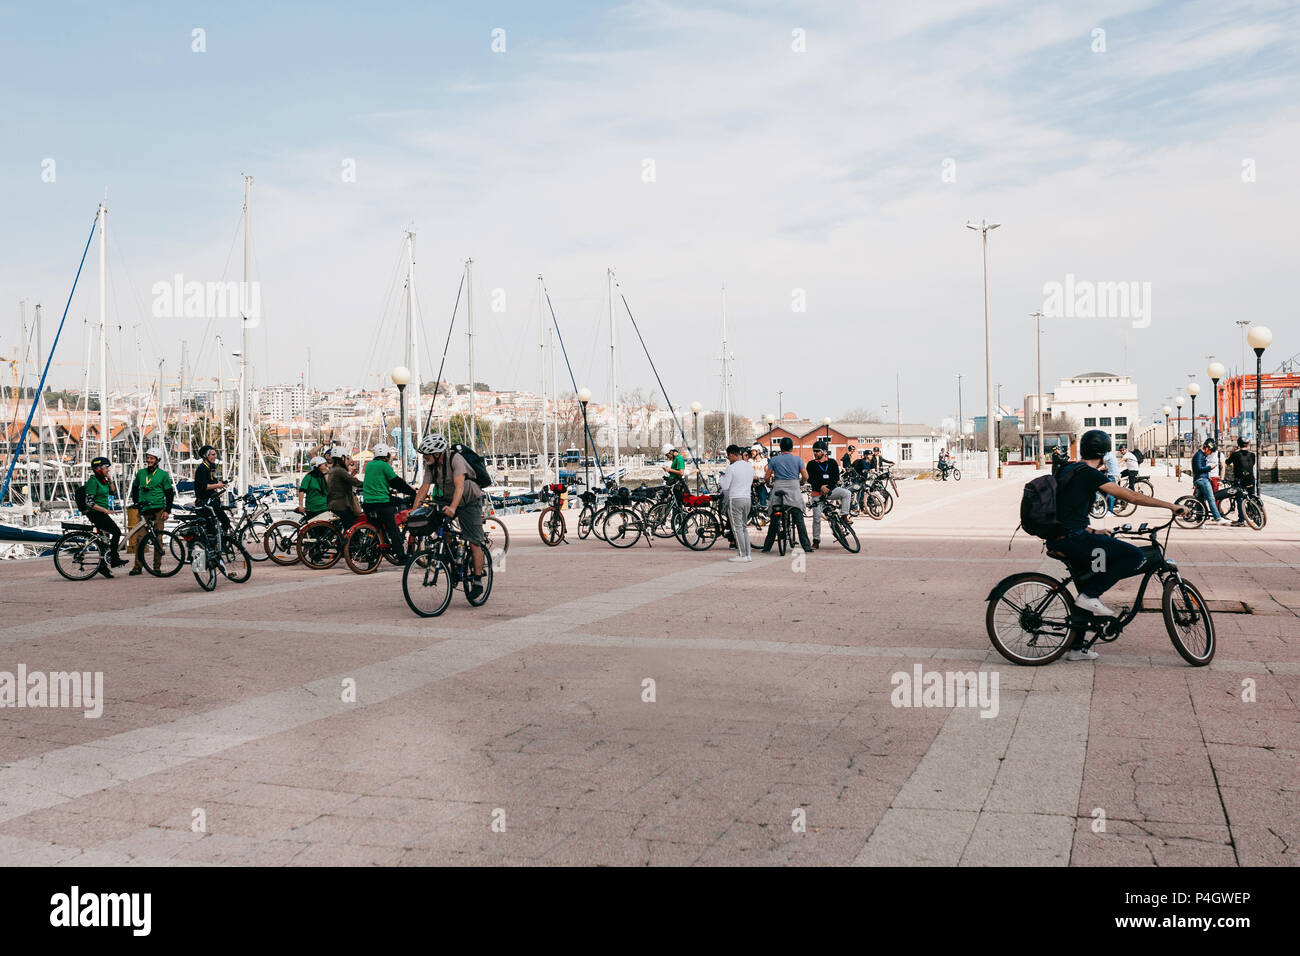 Lisbonne, juin 18, 2018 : un groupe de touristes sur les bicyclettes ou les athlètes admirer la vue magnifique sur la ville au bord de l'eau, dans la région de Belem Banque D'Images